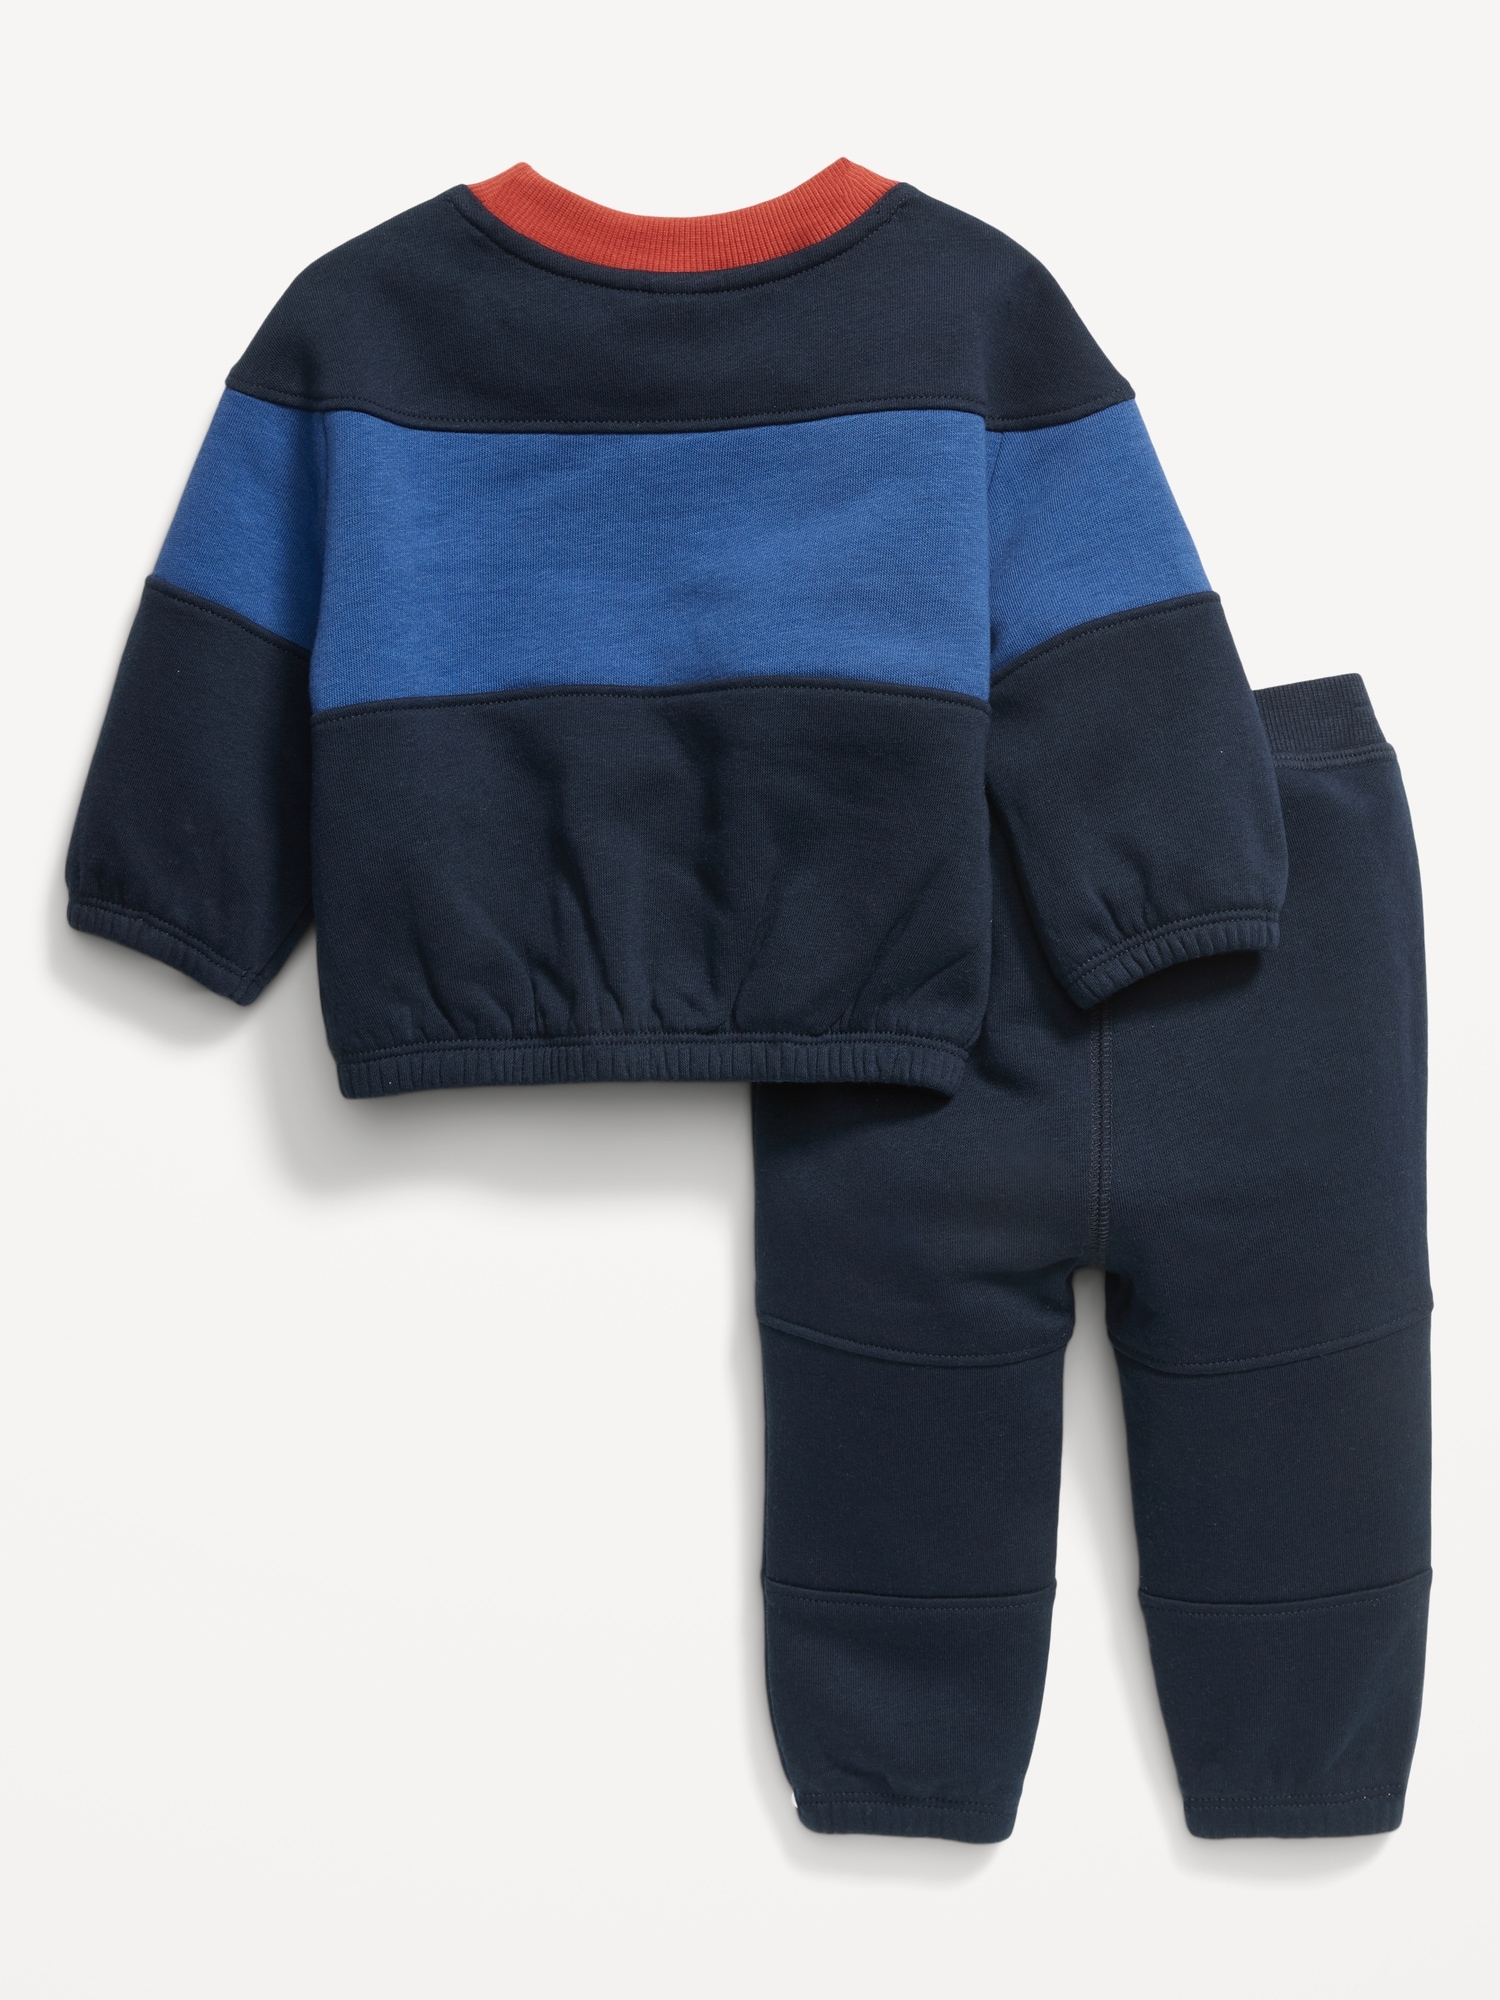 Unisex Color-Block Sweatshirt & Sweatpants Set for Baby | Old Navy